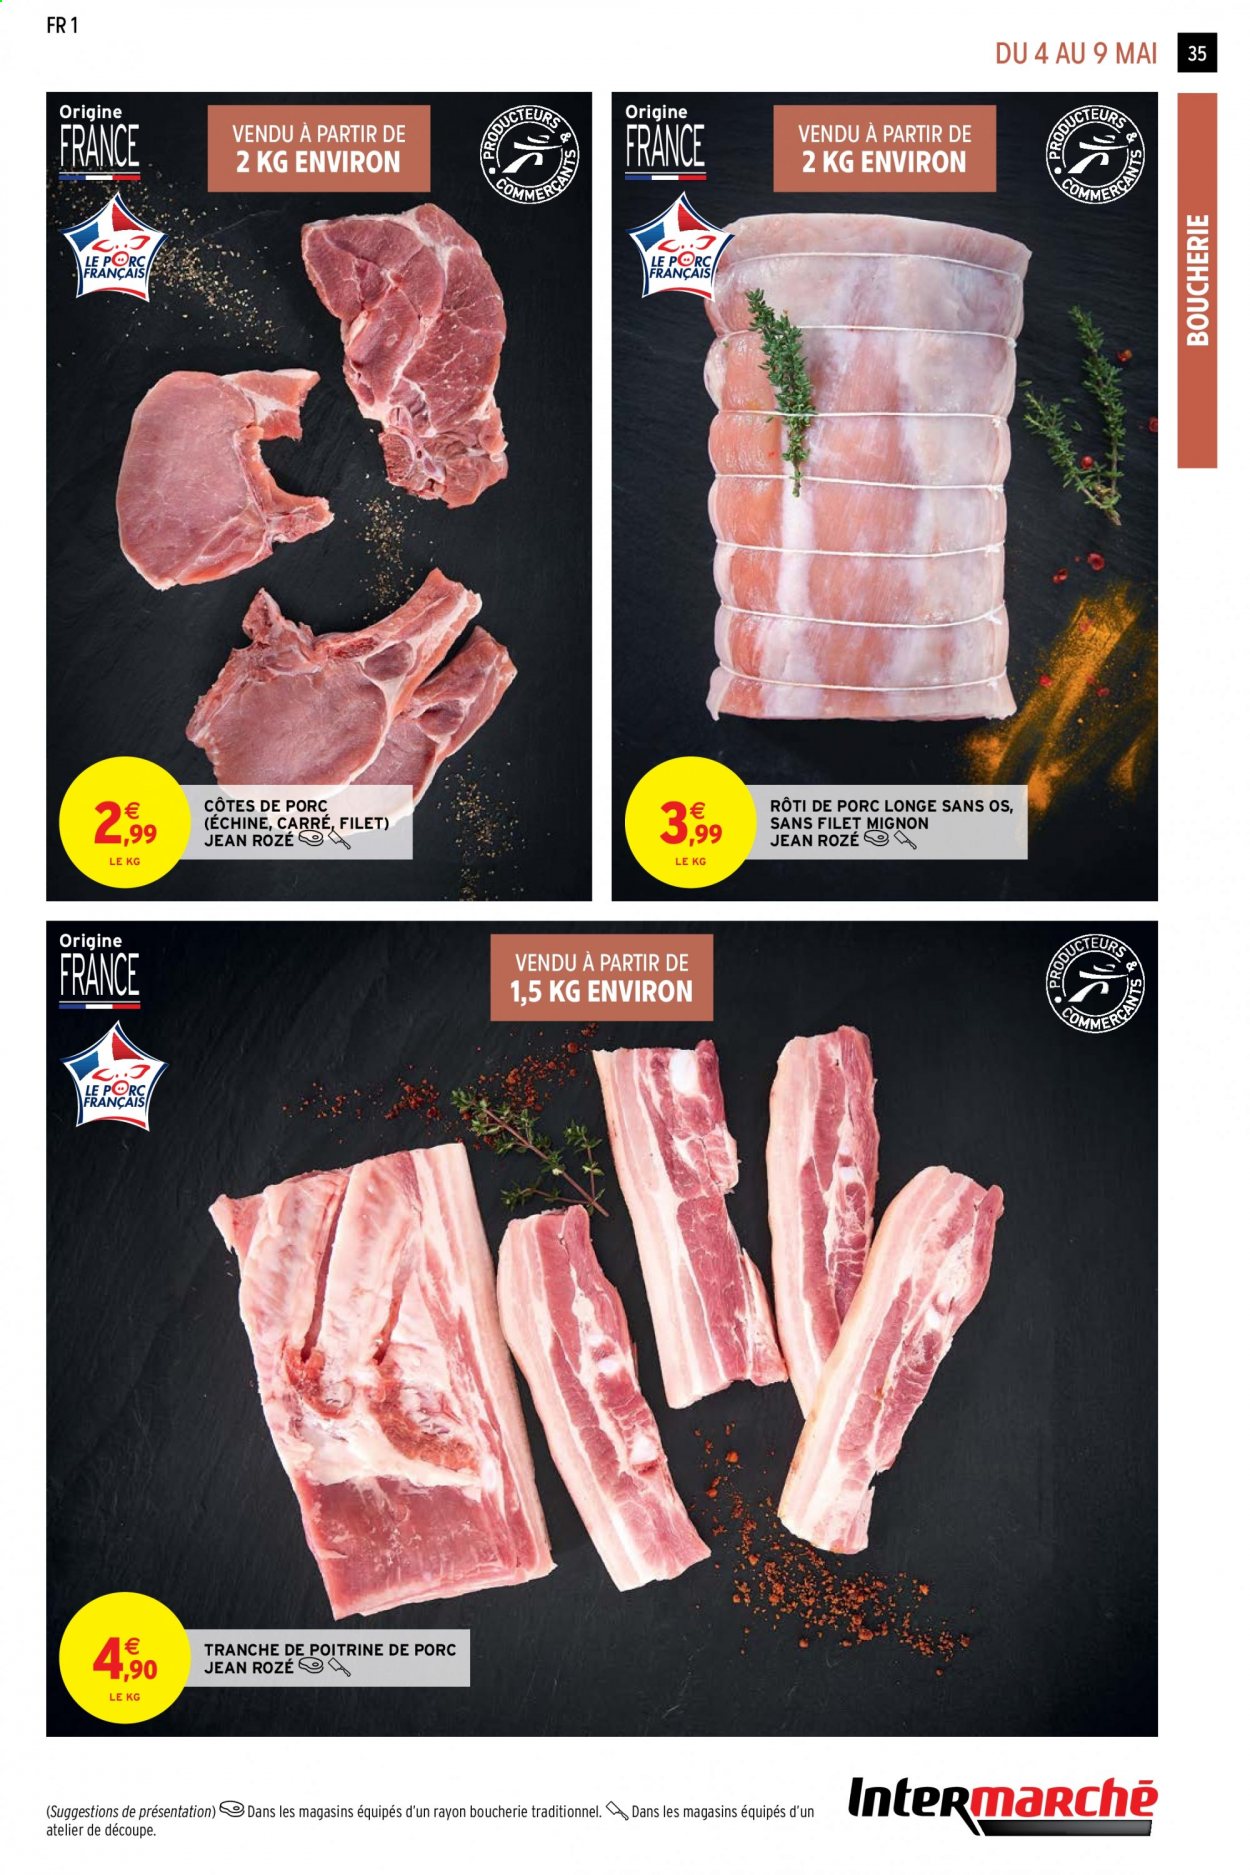 thumbnail - Catalogue Intermarché Contact - 04/05/2021 - 16/05/2021 - Produits soldés - côtes de porc, filet mignon, rôti de porc, poitrine de porc, viande de porc, longe de porc. Page 35.